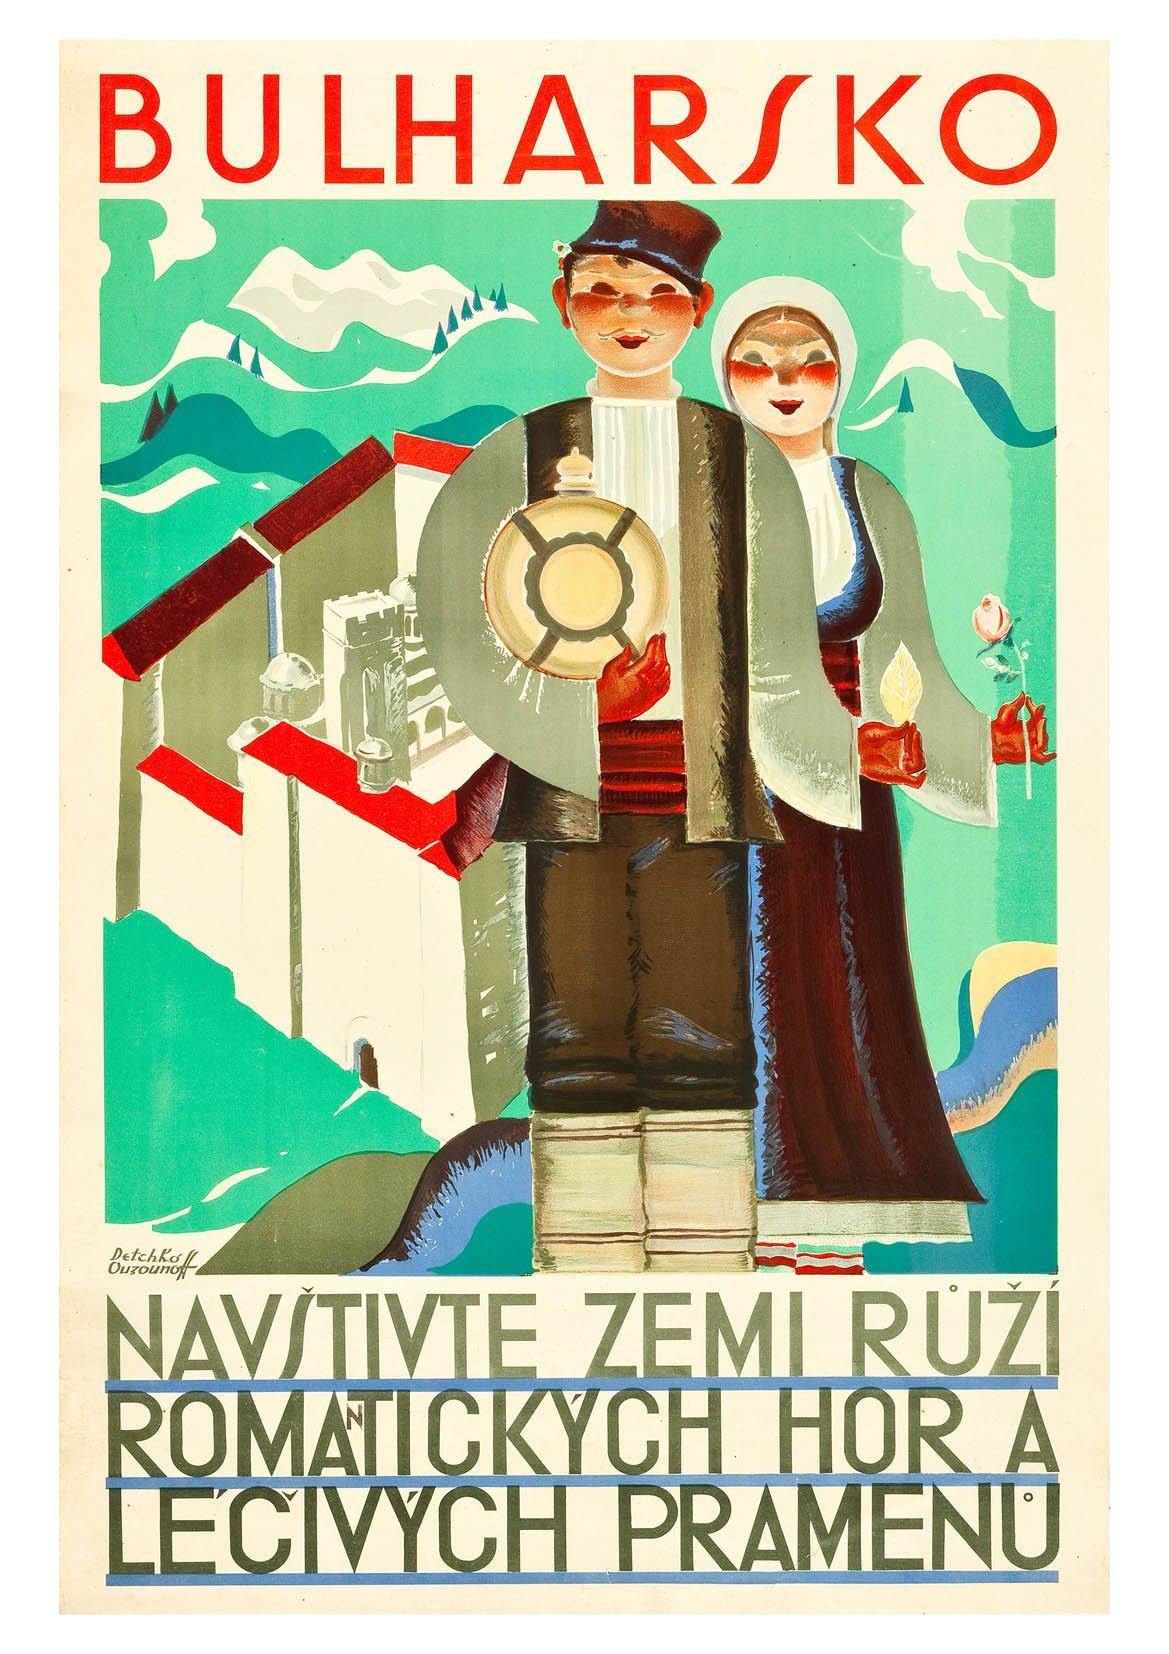 BULGARIA PRINT: Vintage Bulharsko Travel Poster - Pimlico Prints